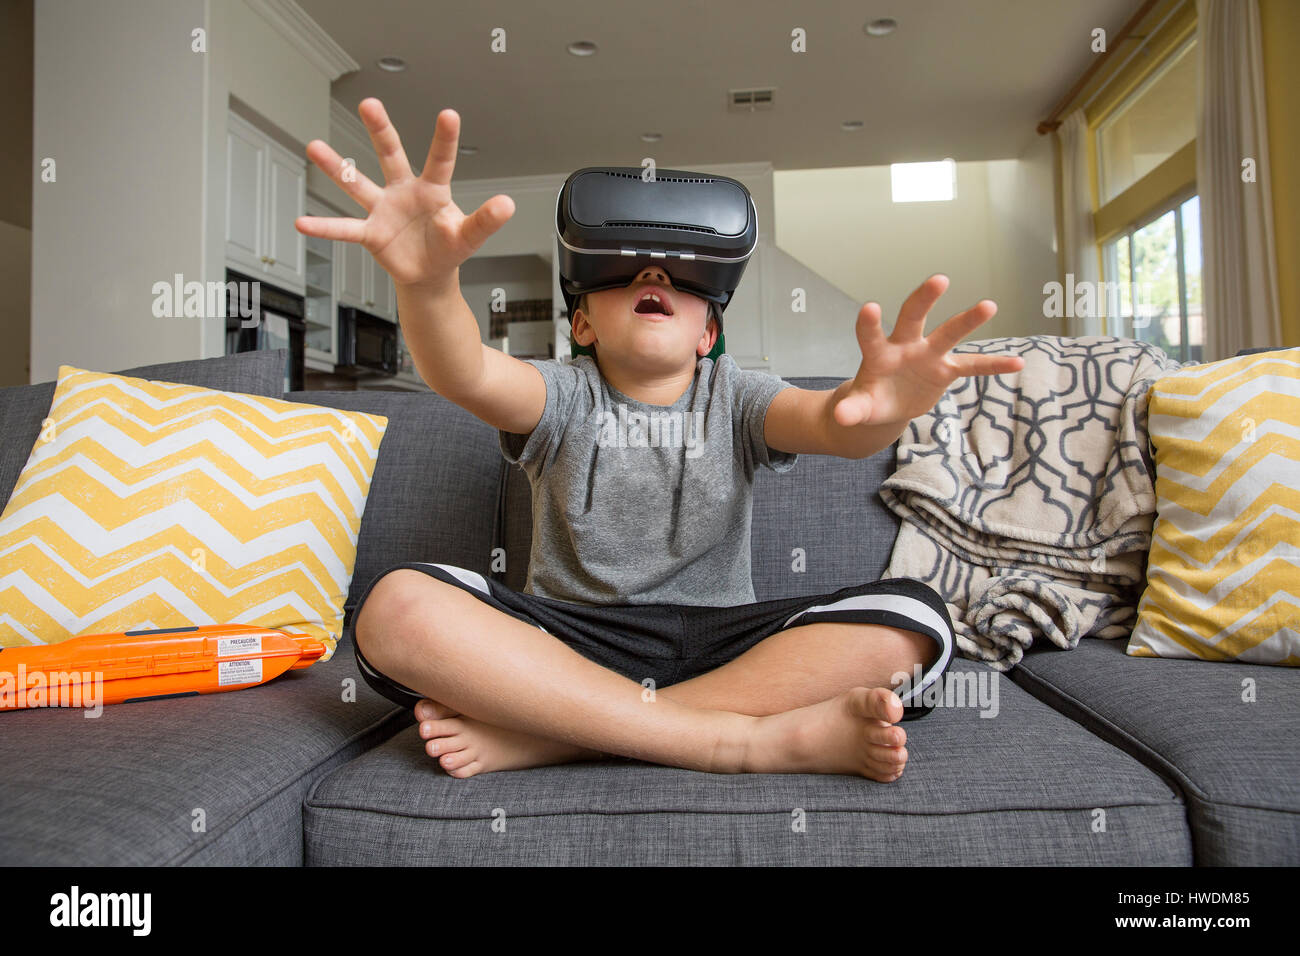 Jeune garçon assis jambes croisées sur un canapé, le port de casque de réalité virtuelle, mains tendues devant lui Banque D'Images